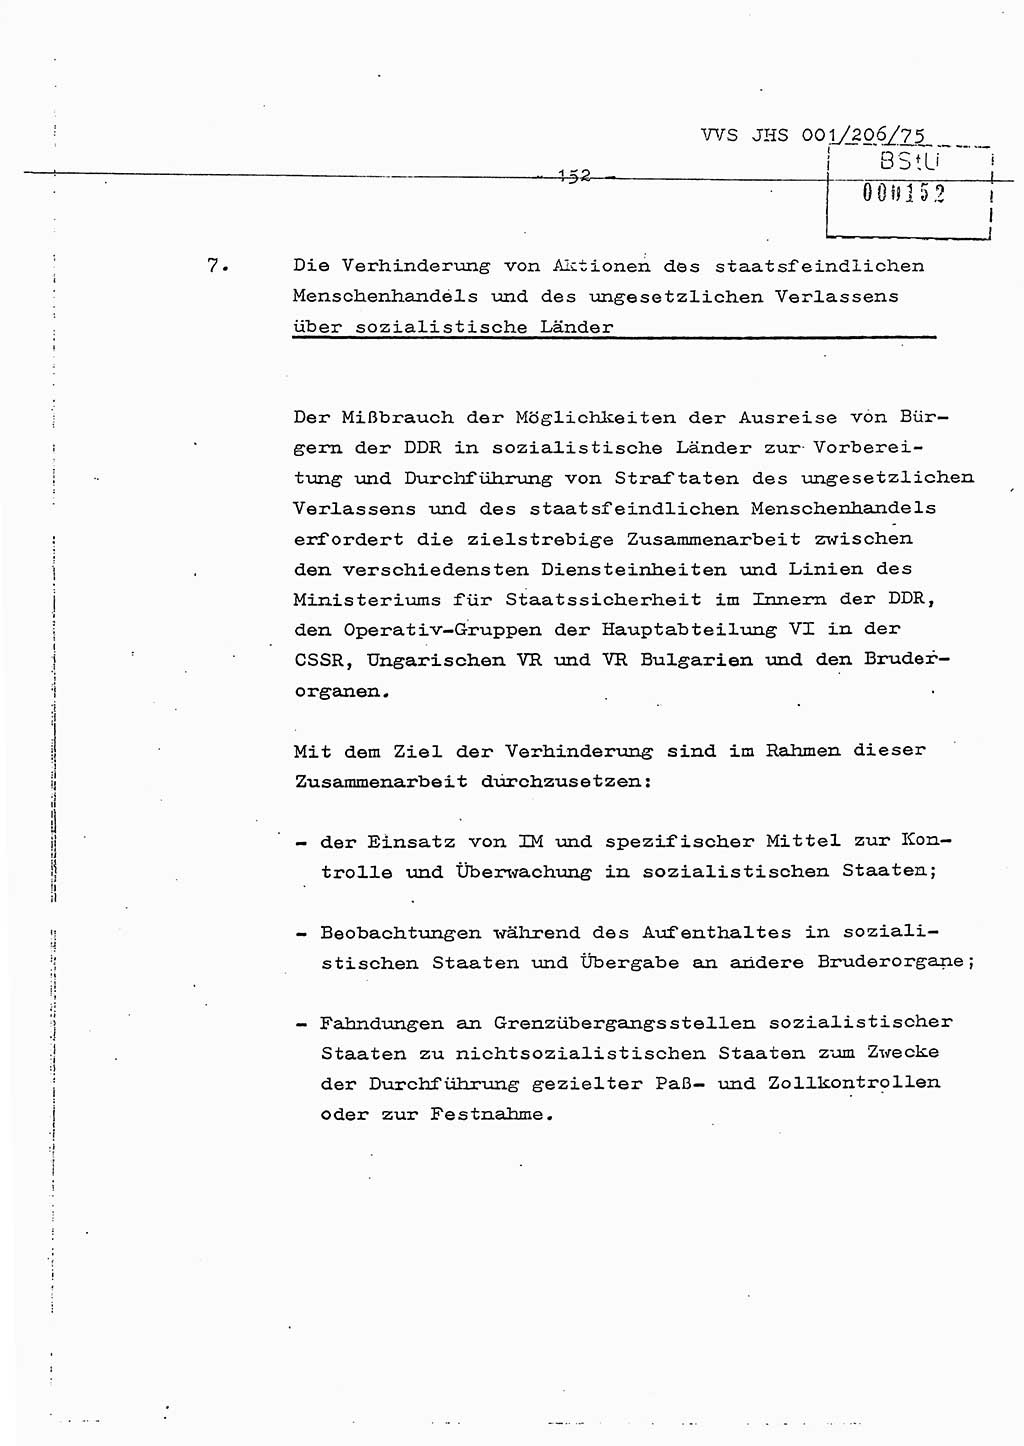 Dissertation Generalmajor Manfred Hummitzsch (Leiter der BV Leipzig), Generalmajor Heinz Fiedler (HA Ⅵ), Oberst Rolf Fister (HA Ⅸ), Ministerium für Staatssicherheit (MfS) [Deutsche Demokratische Republik (DDR)], Juristische Hochschule (JHS), Vertrauliche Verschlußsache (VVS) 001-206/75, Potsdam 1975, Seite 152 (Diss. MfS DDR JHS VVS 001-206/75 1975, S. 152)